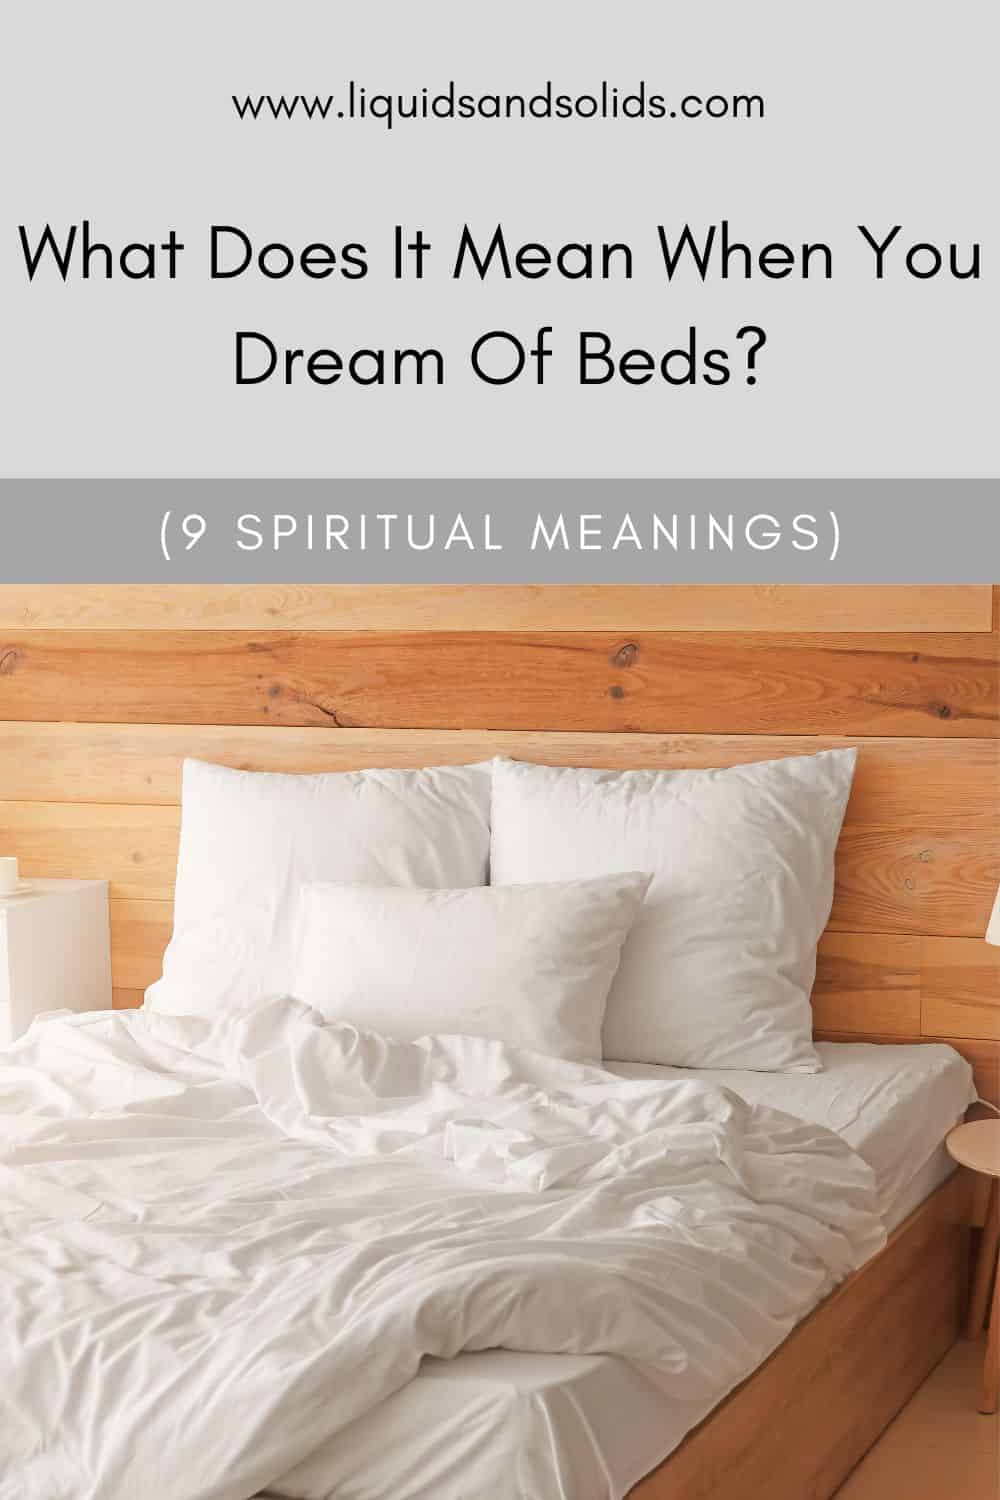  Que significa cando soñas con camas? (9 significados espirituais)